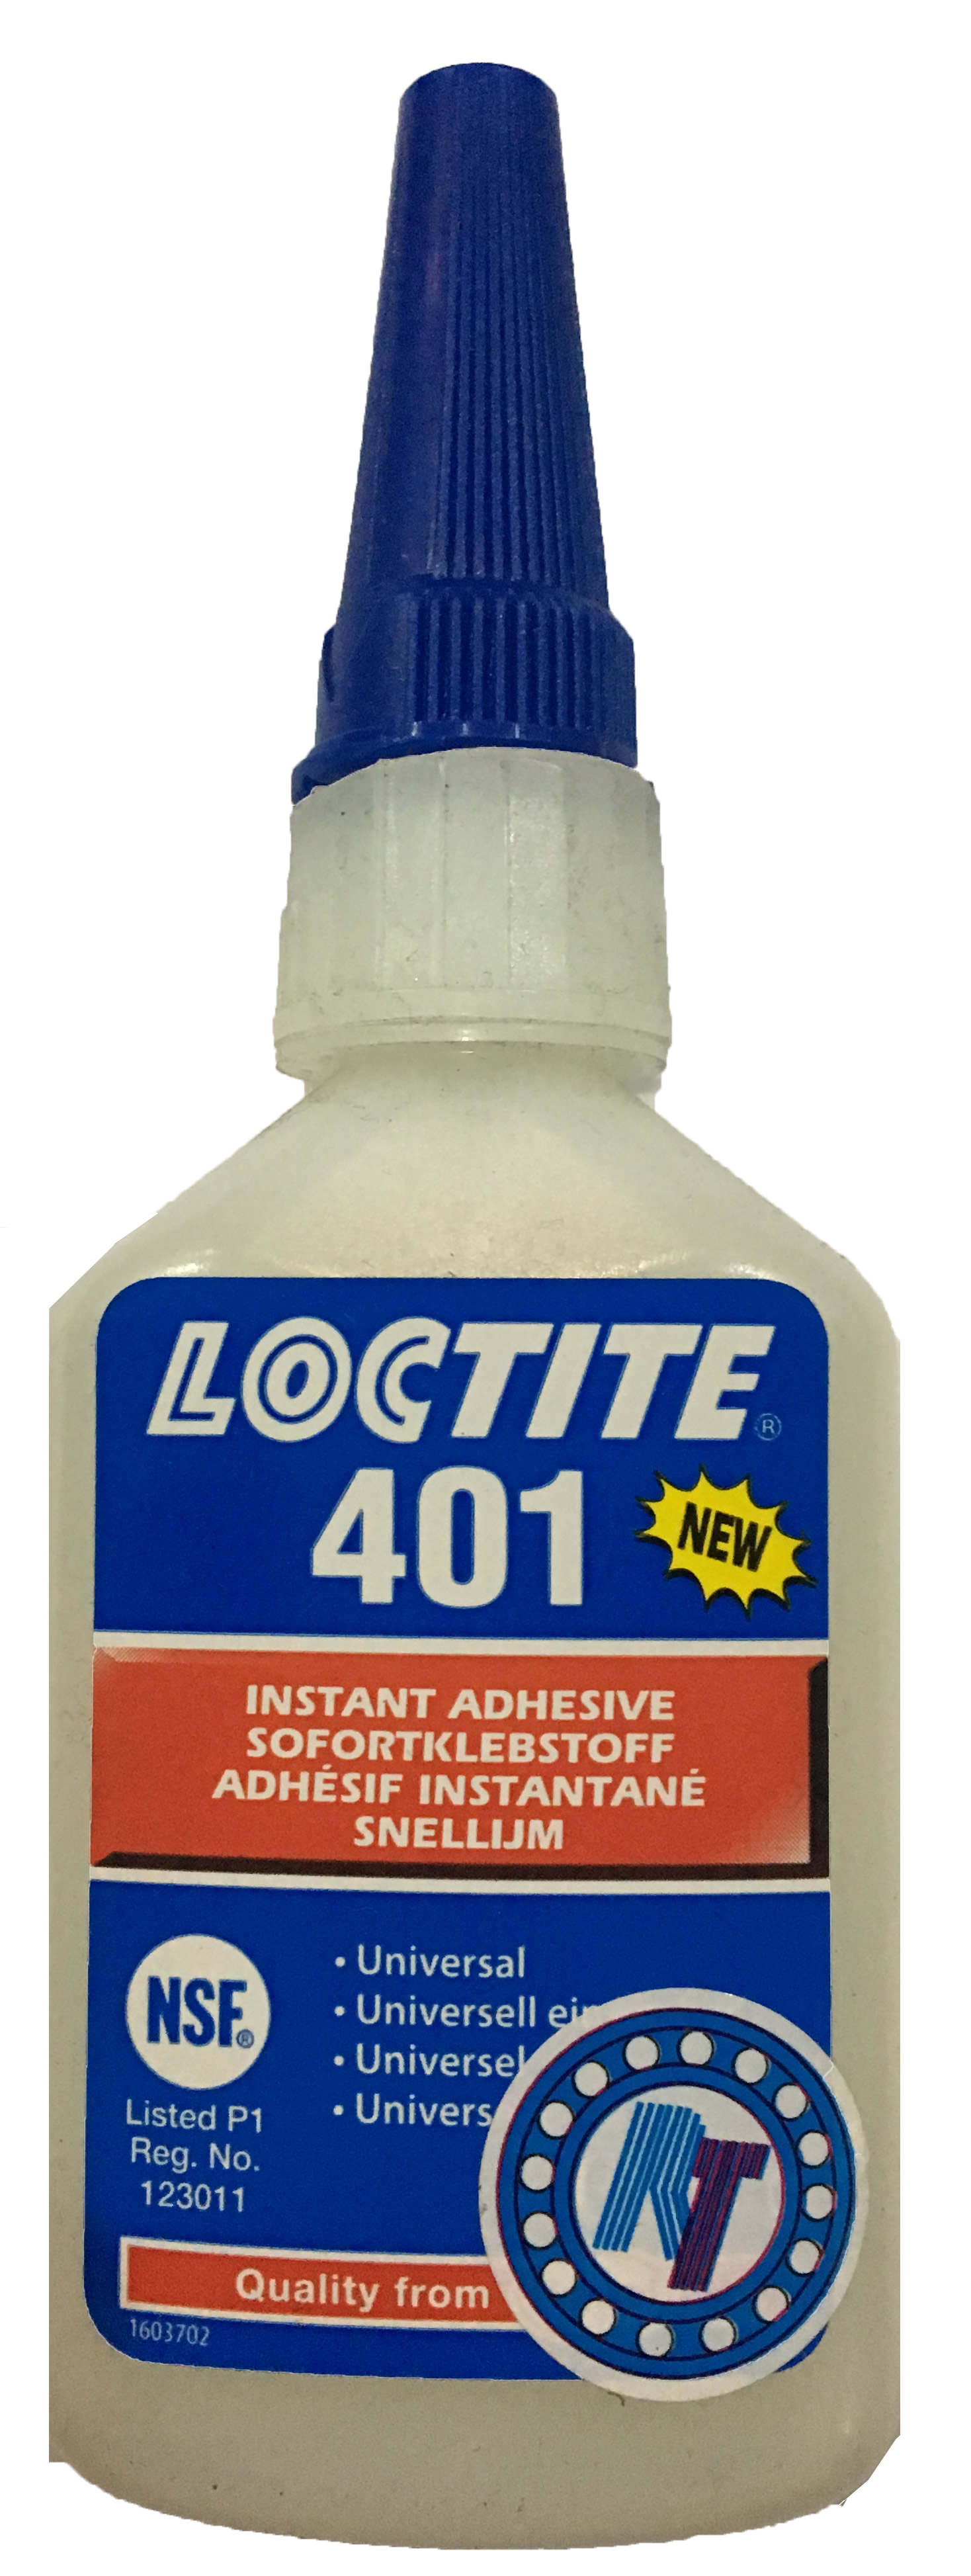 Loctite401,142576,loctite